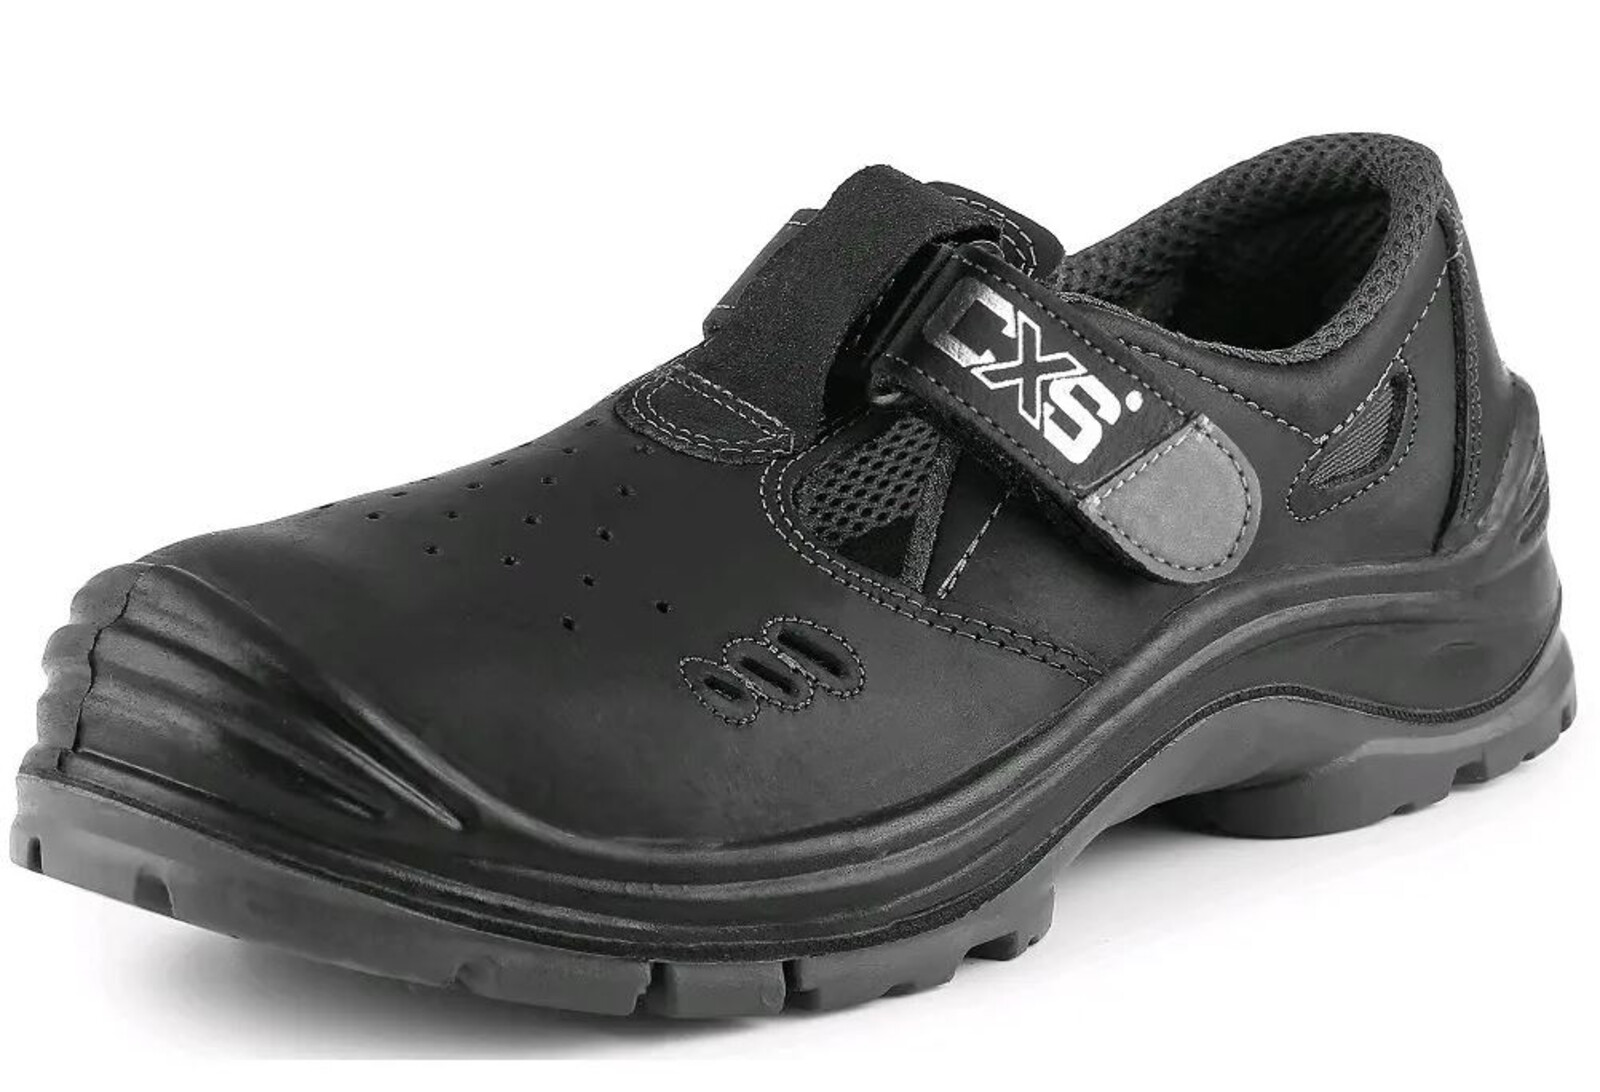 Bezpečnostné sandále CXS Safety Steel Iron S1 - veľkosť: 41, farba: čierna